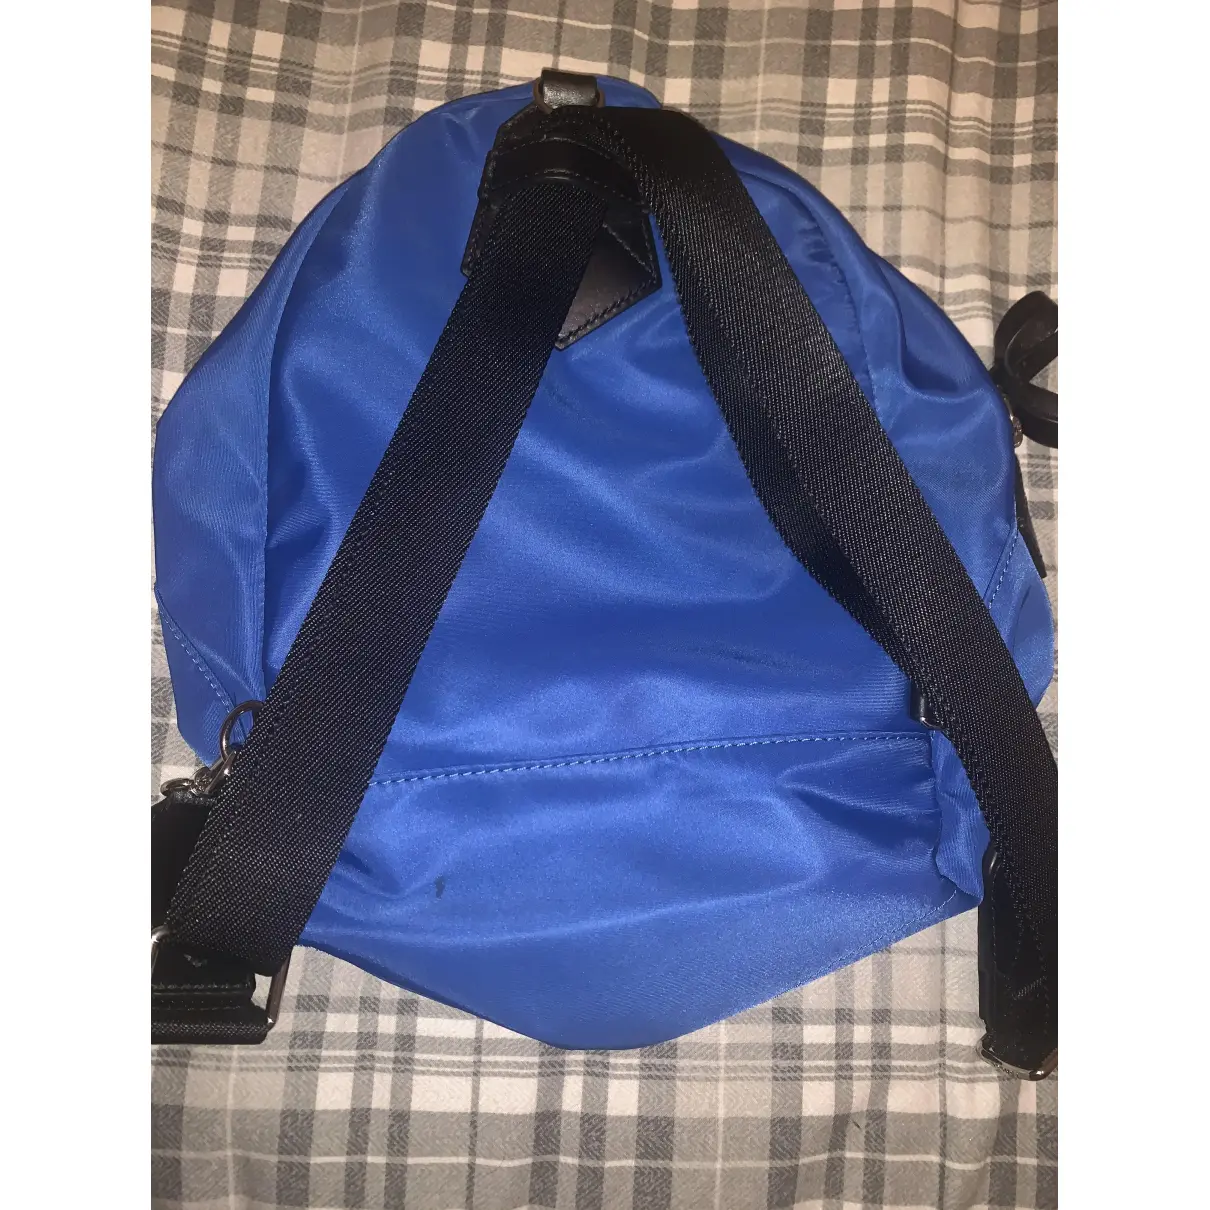 Buy Lancel Cloth backpack online